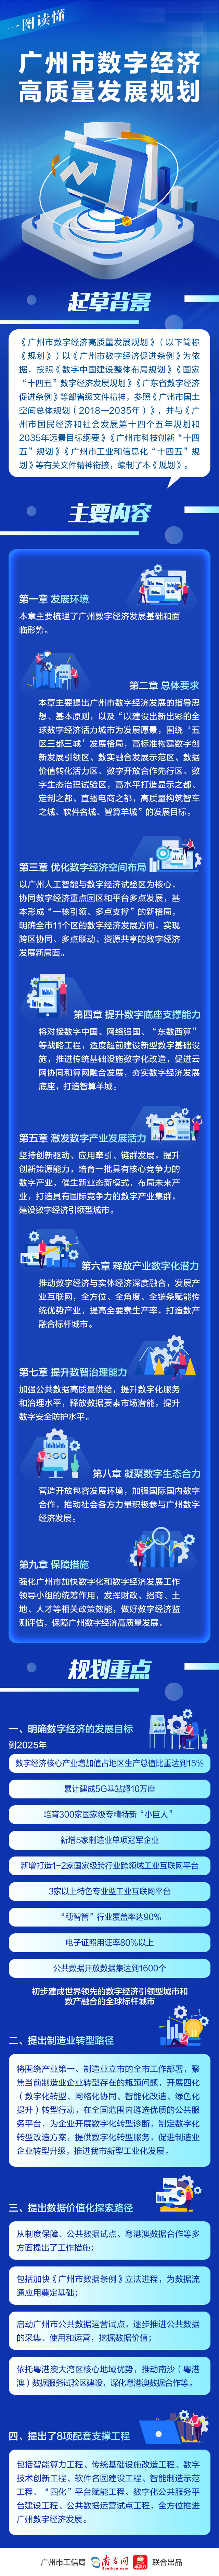 一图读懂《广州市数字经济高质量发展规划》.jpg